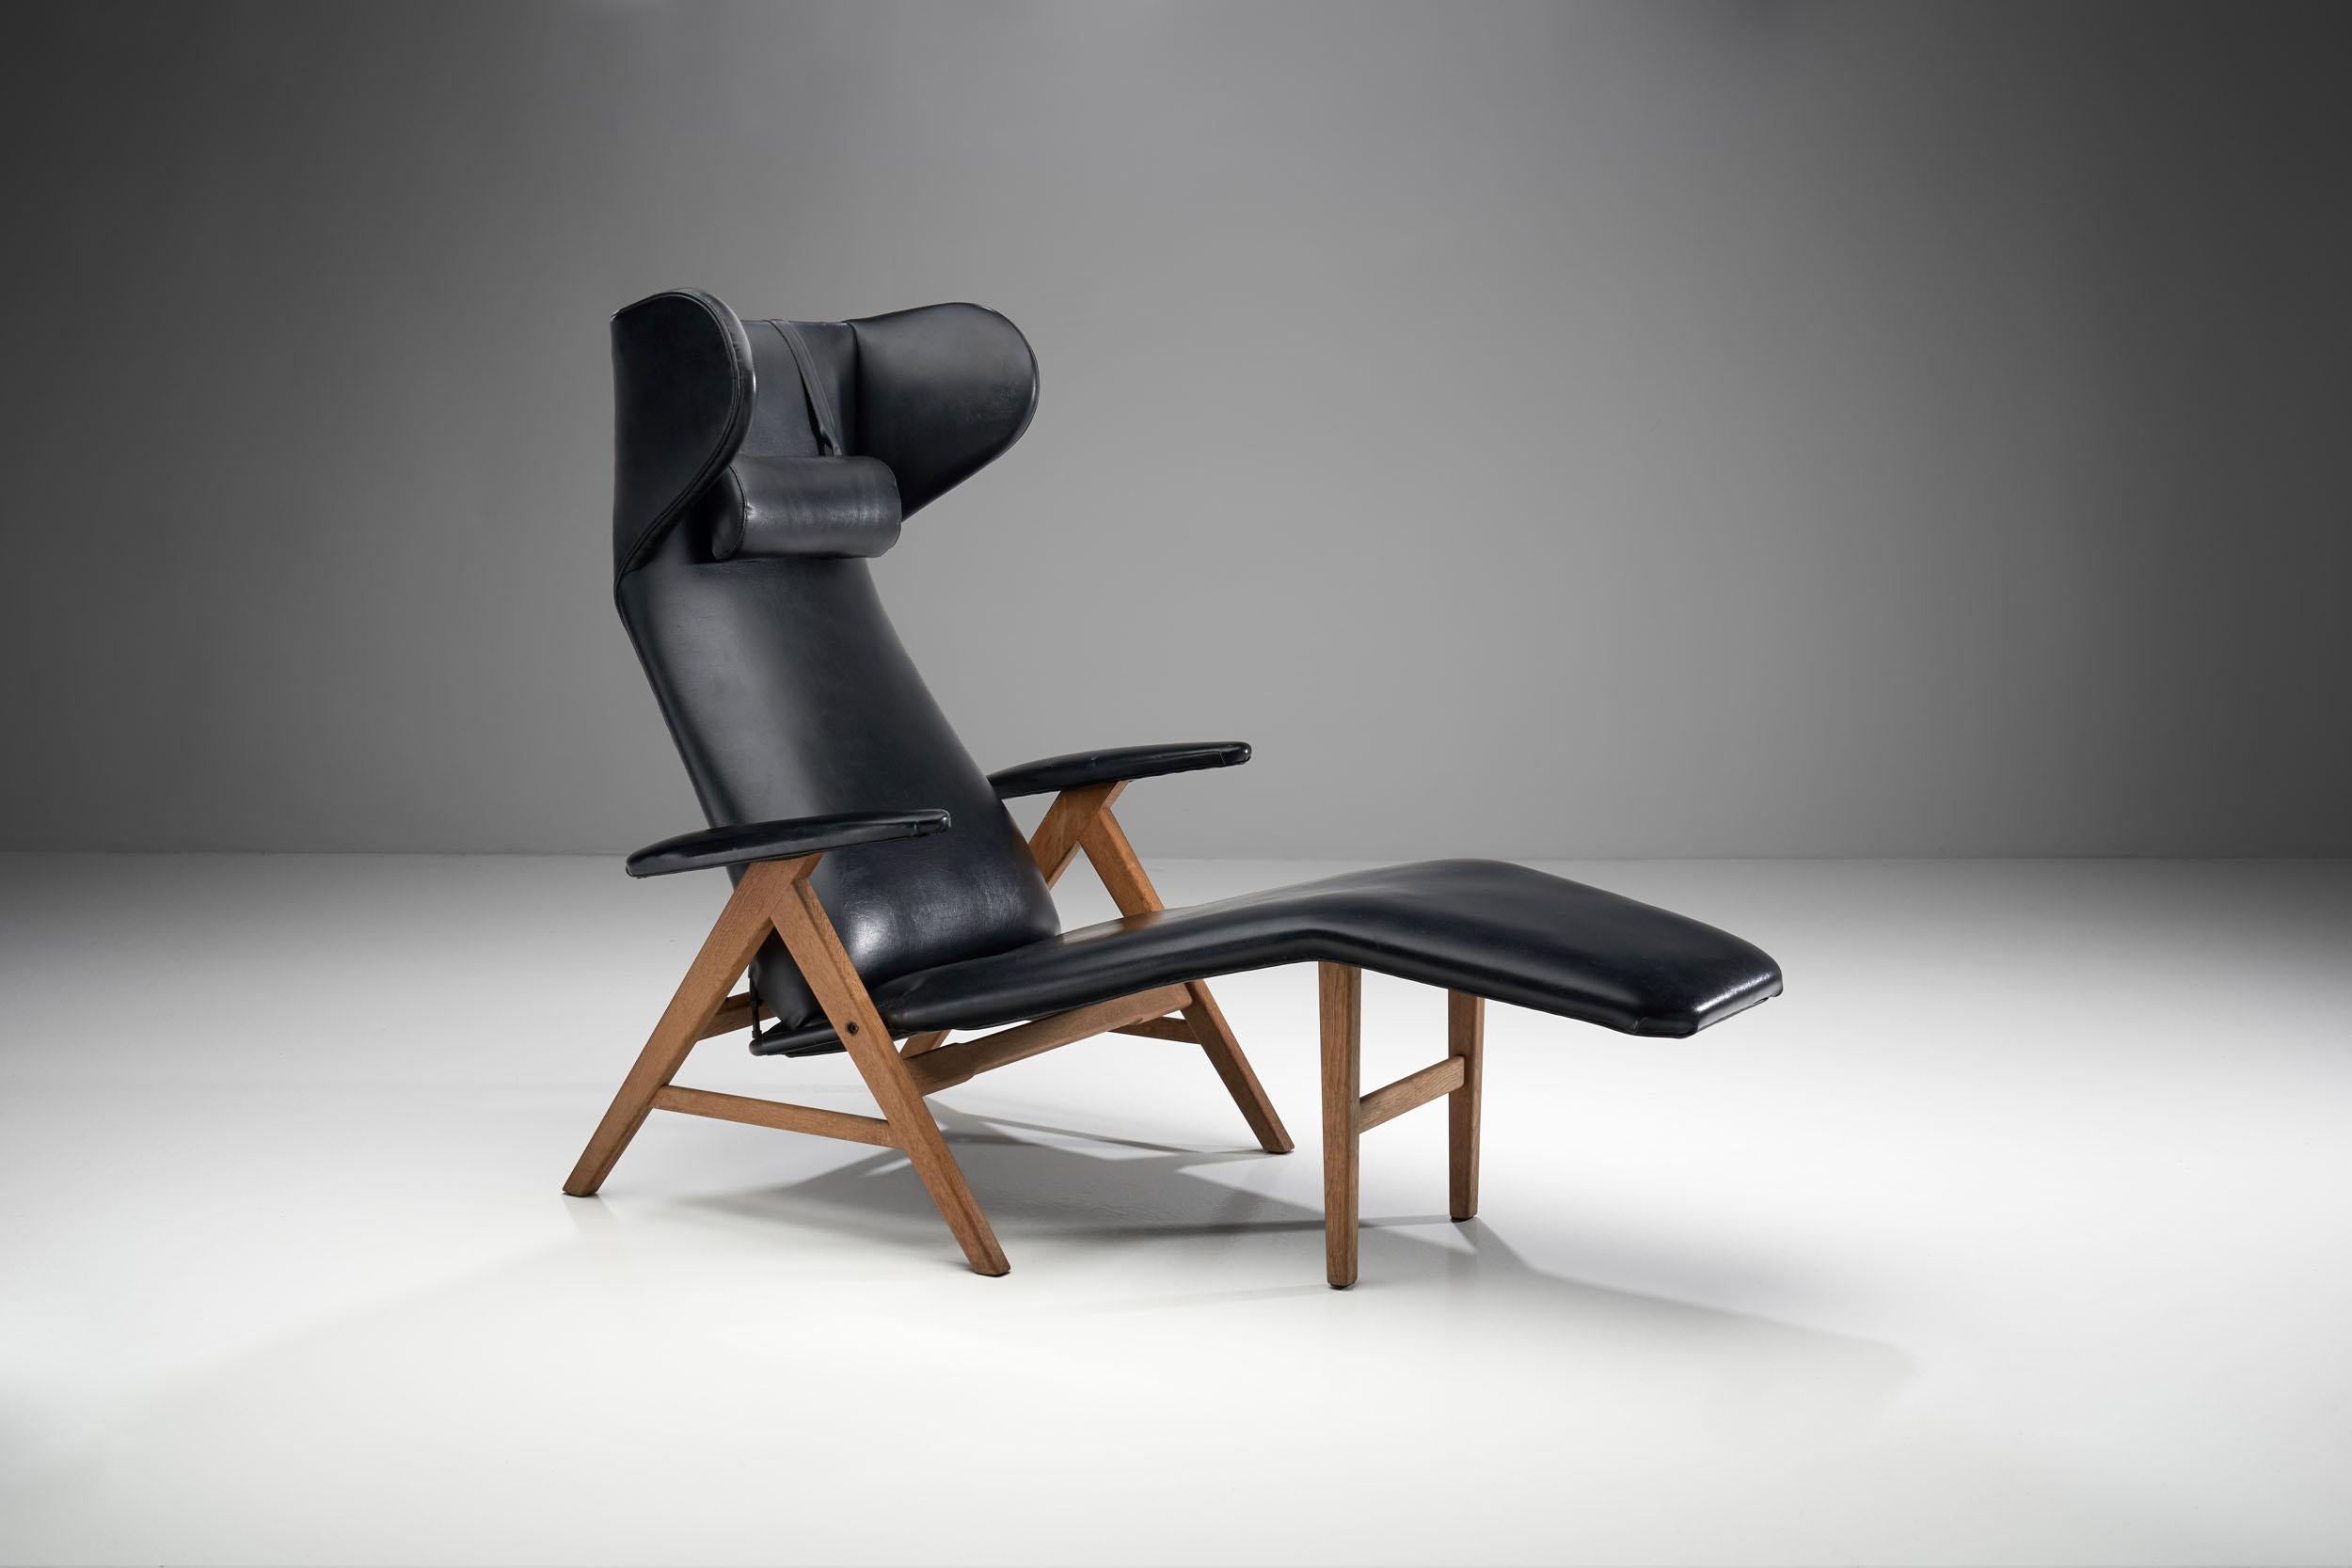 Chaise longue noire avec cadre en hêtre teinté, communément attribuée à H.W. Klein pour Bramin. 

Ce fauteuil de salon merveilleusement conçu est doté d'une fonction d'inclinaison, ce qui le rend extrêmement confortable. L'assise se prolonge en